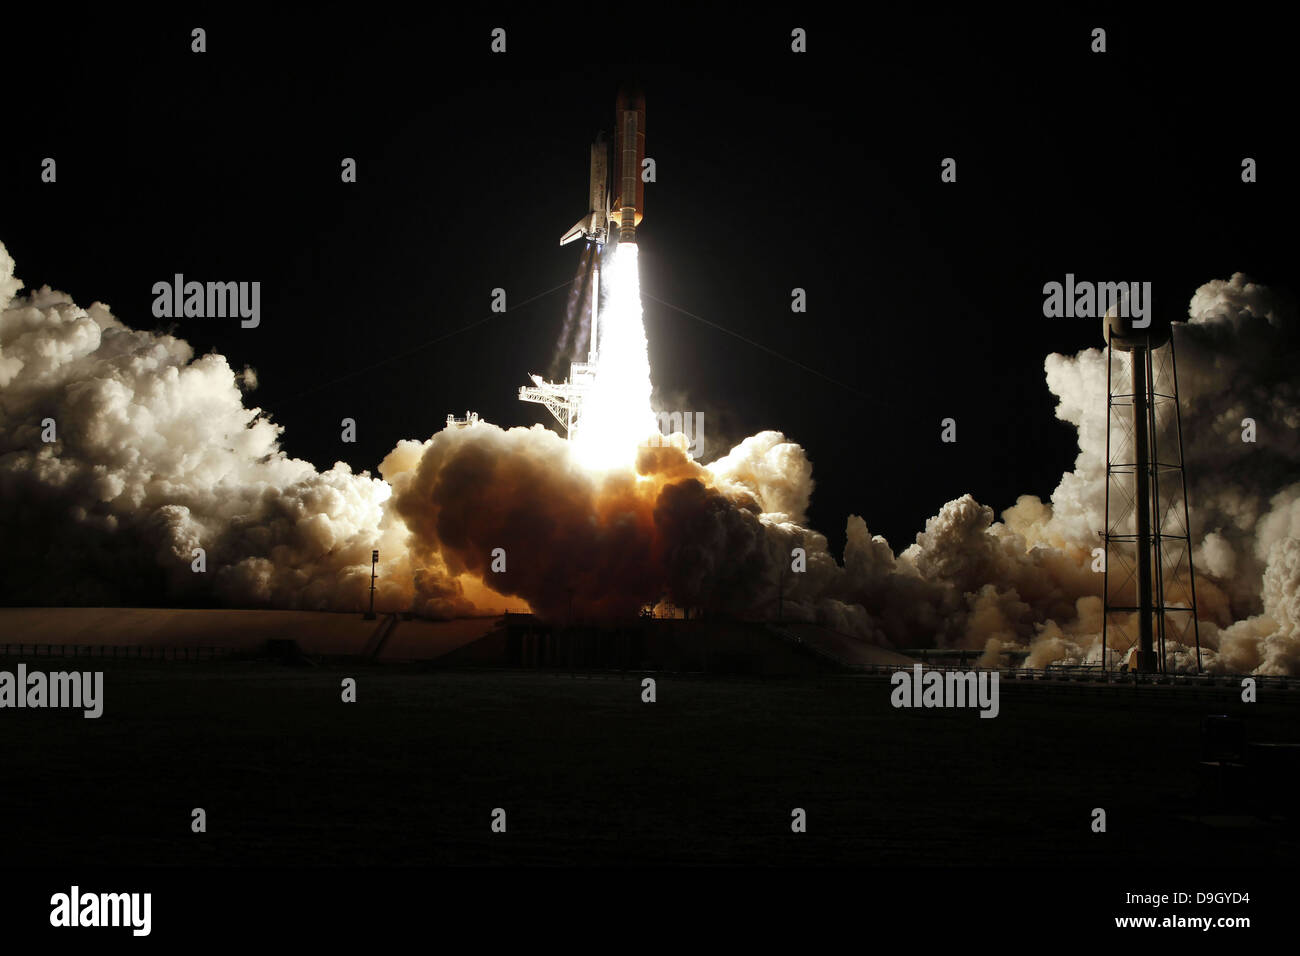 La navette spatiale Discovery décollera de lancement 39A au Centre spatial Kennedy en Floride, sur la mission STS-131. Banque D'Images